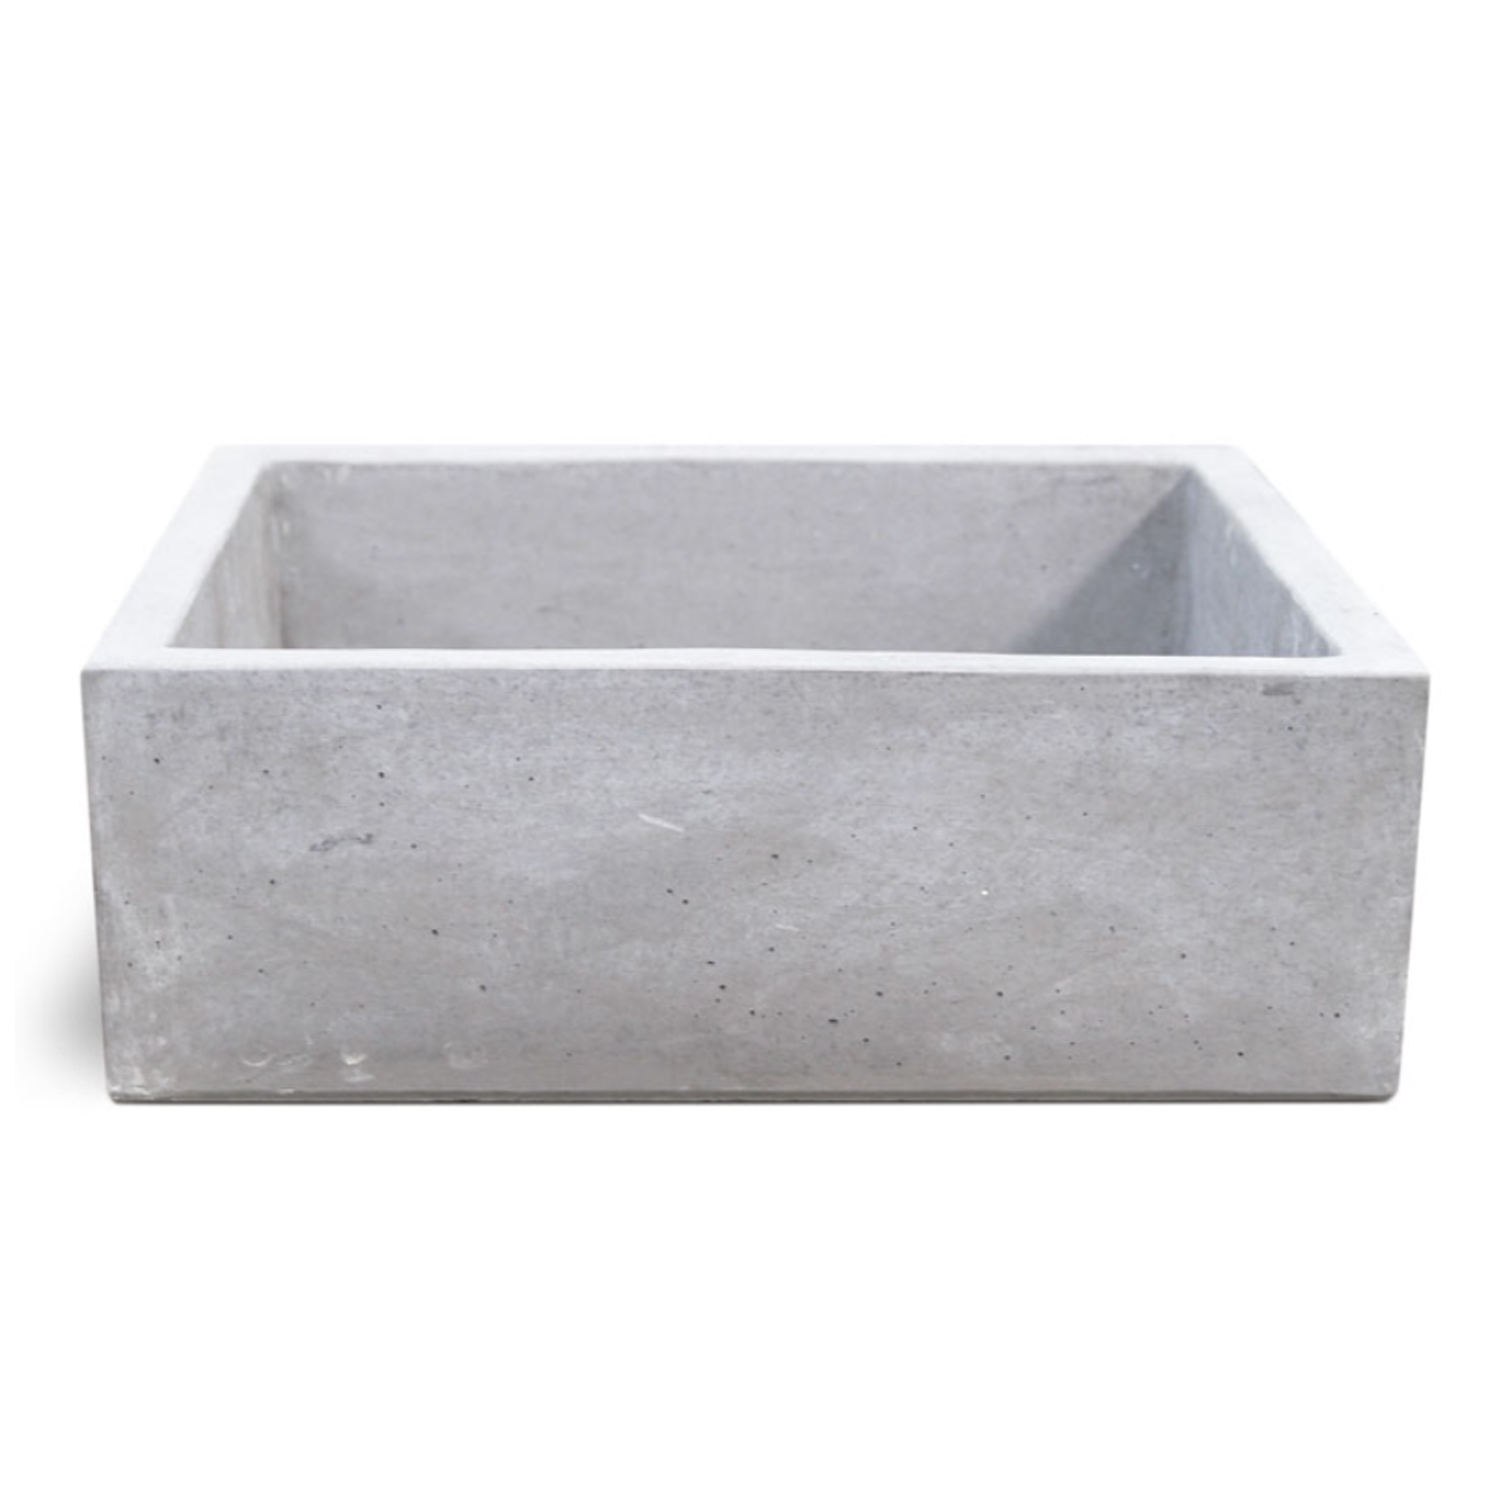 Lavello da esterno in cemento grigio cm 45x35x16h cm modello Desy